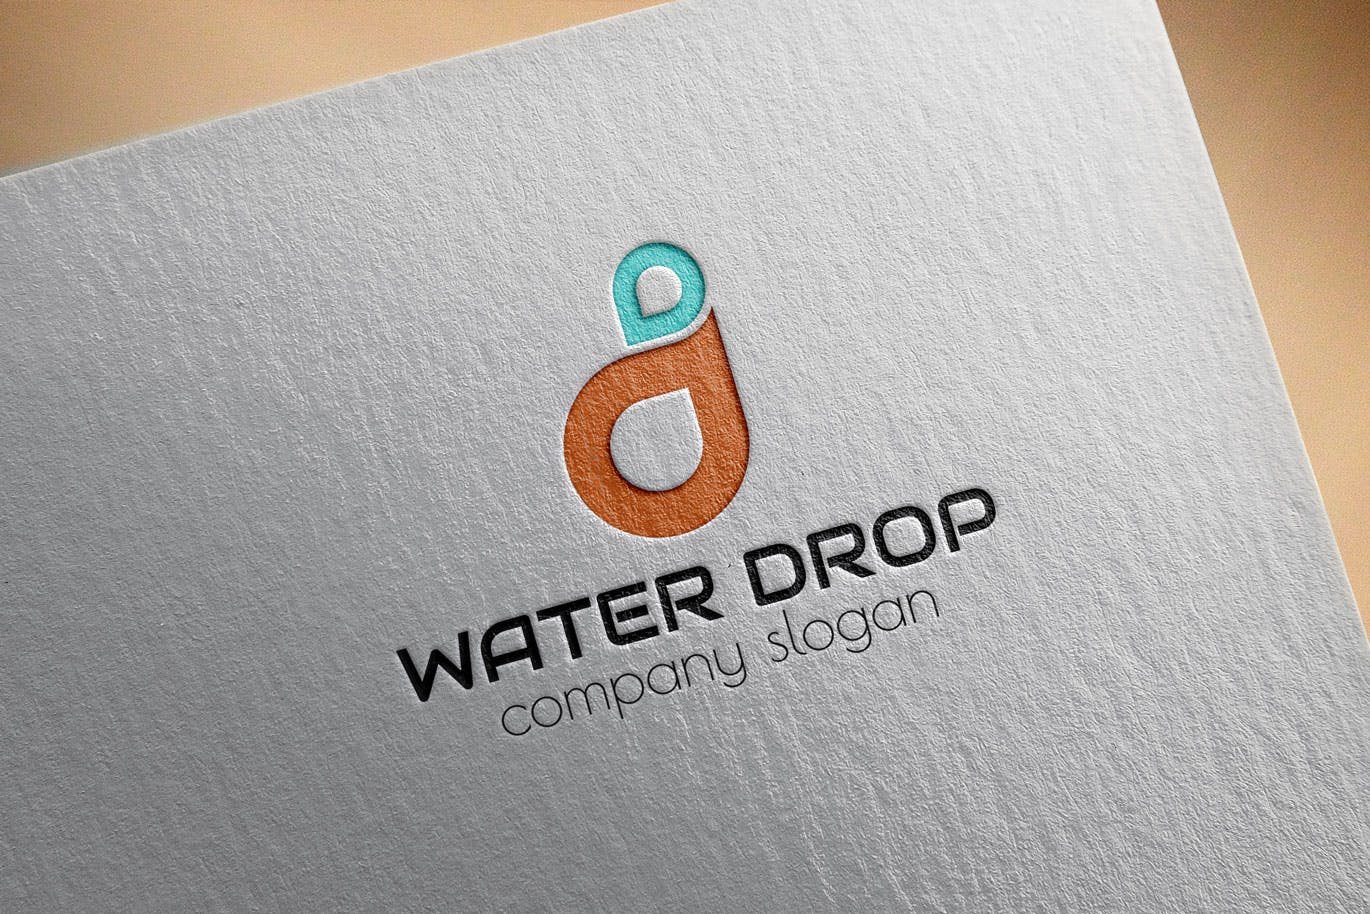 水滴几何图形创意Logo设计16图库精选模板 Water Drop Creative Logo Template插图(2)